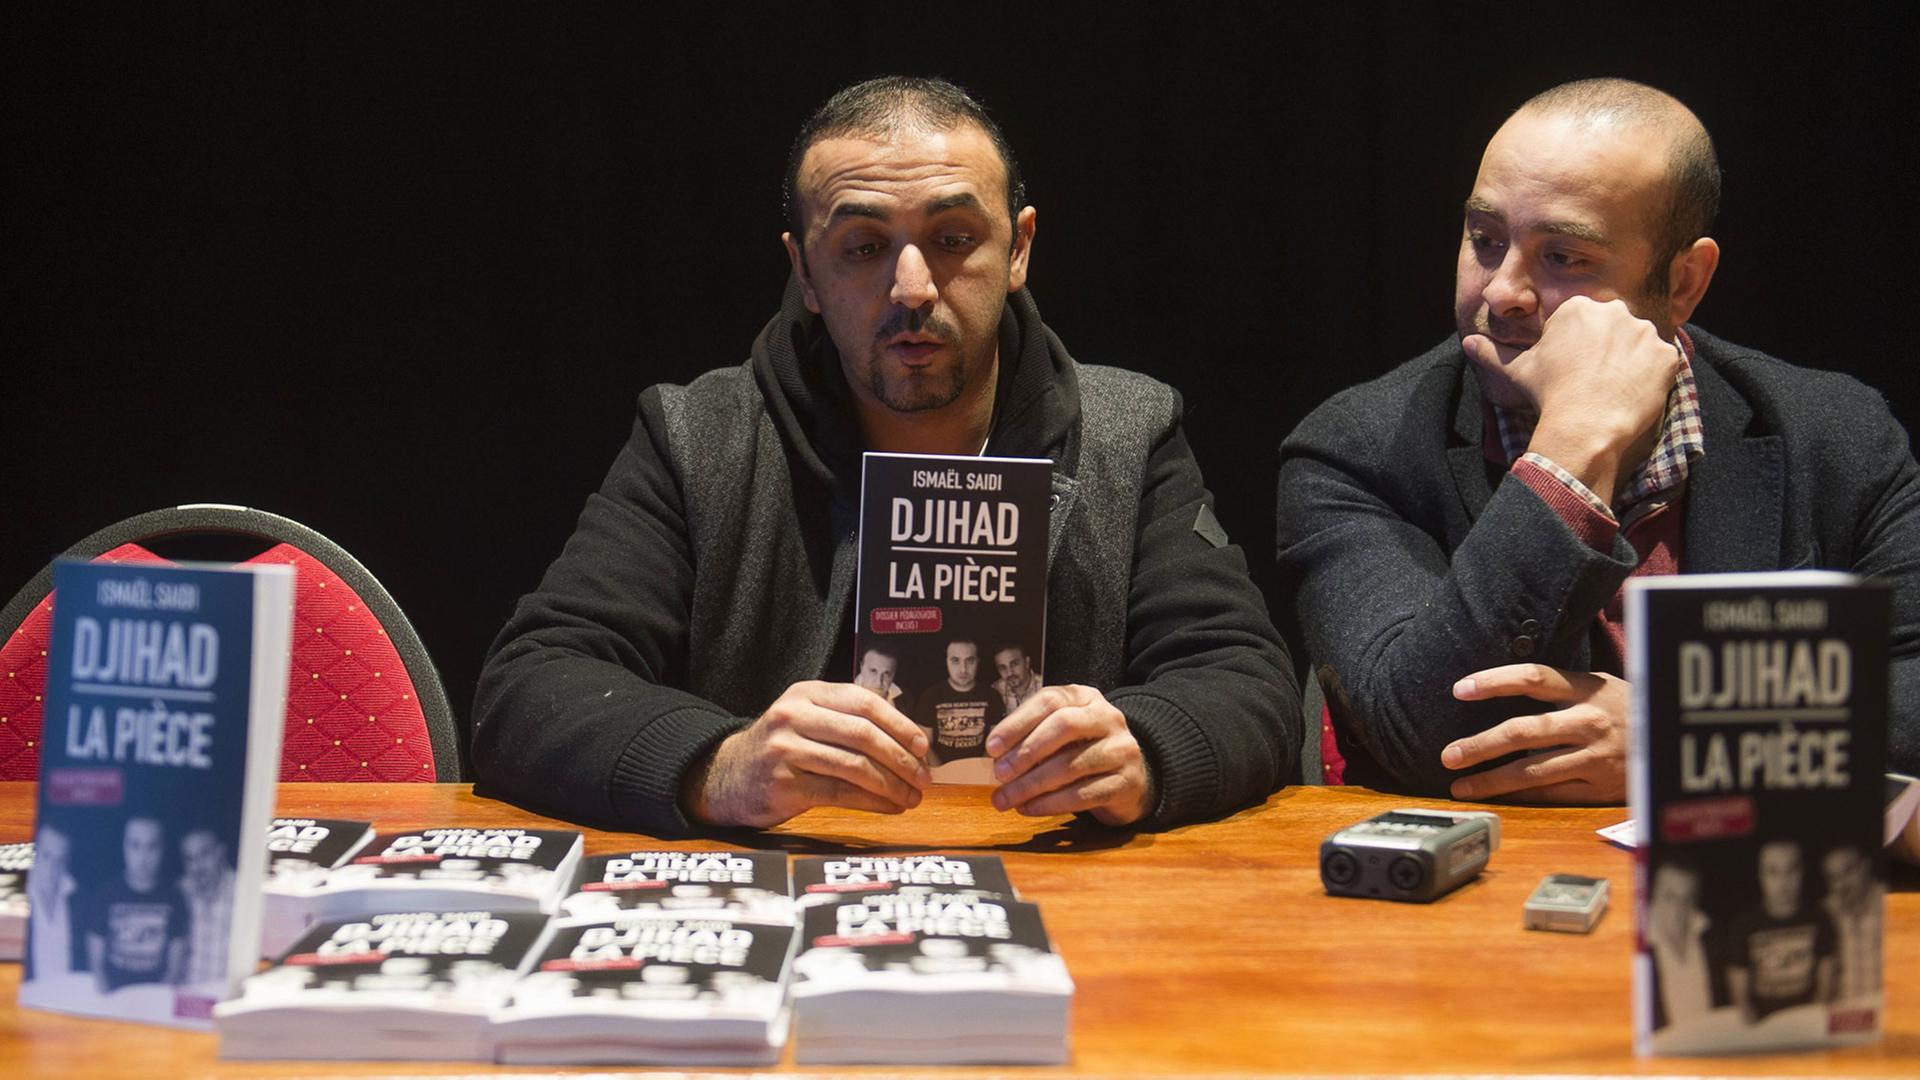 Ismael Saidi (r.) und Reda Chebchoubi am 4.12.2015 in Brüssel bei der Vorstellung des Buches "Djihad"